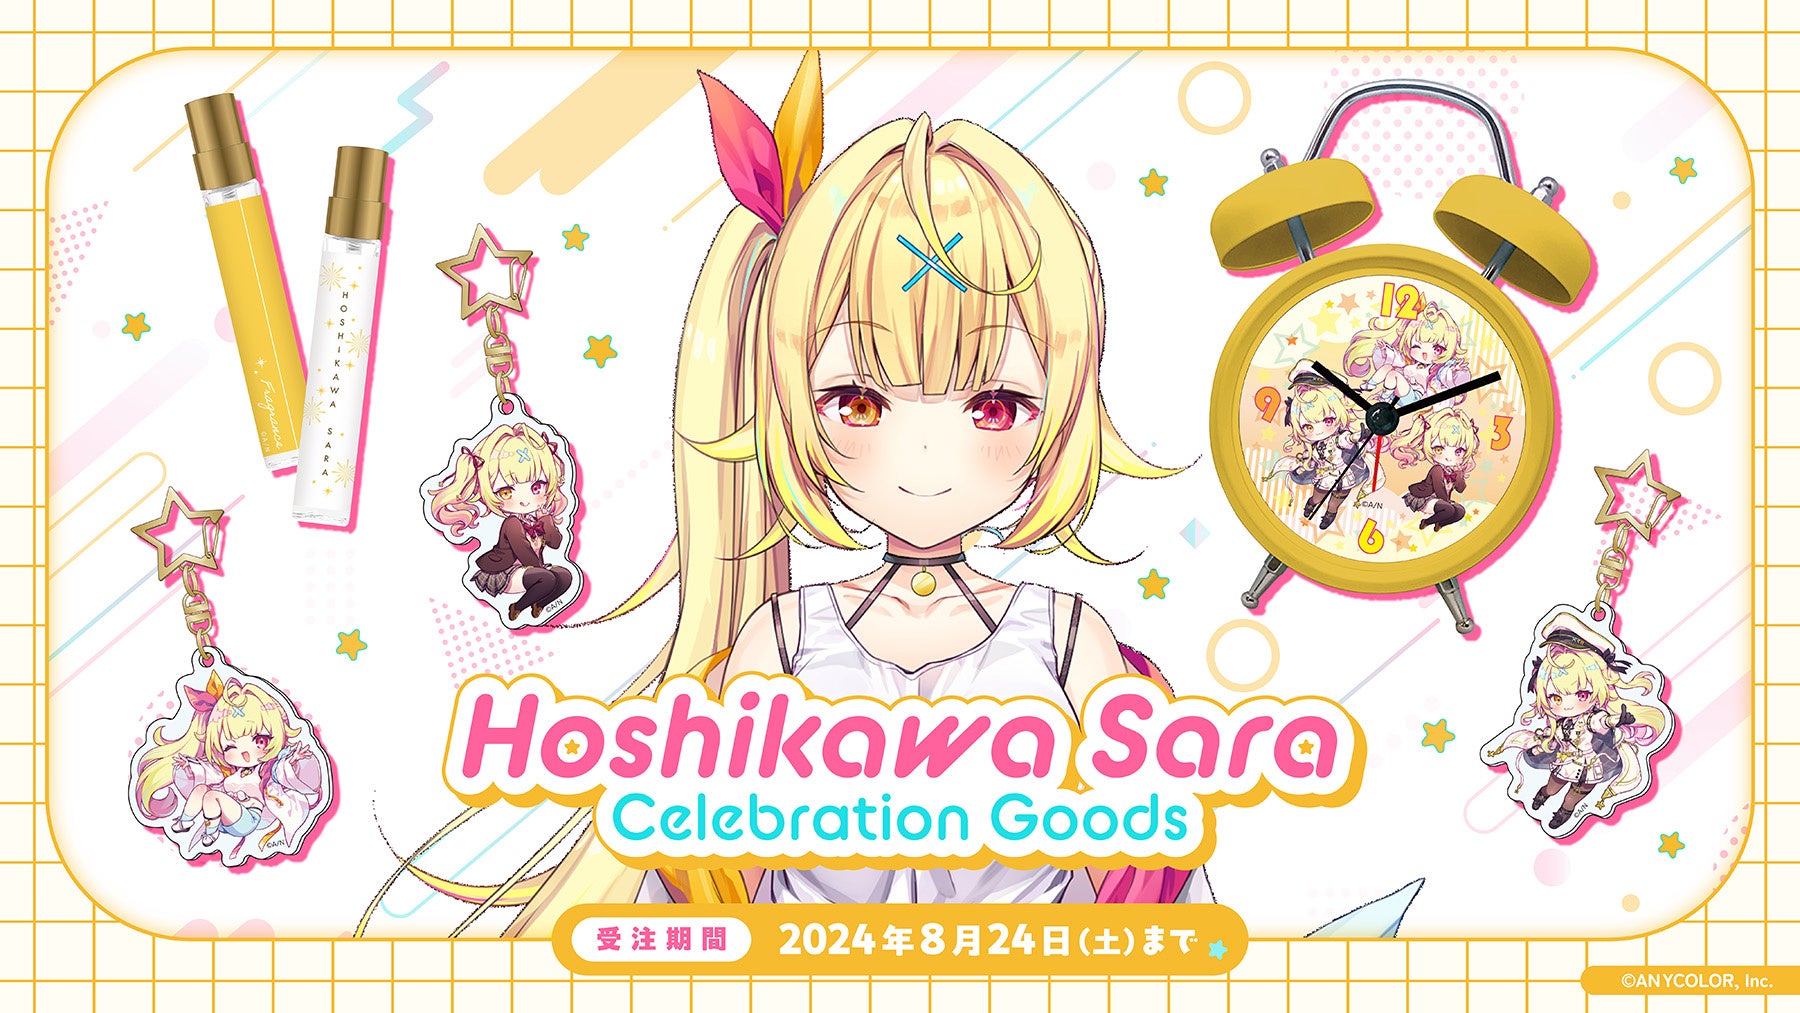 星川サラ（VTuberグループ「にじさんじ」所属）の登録者100万人を記念して「Hoshikawa Sara Celebration Goods」を本日から受注開始！